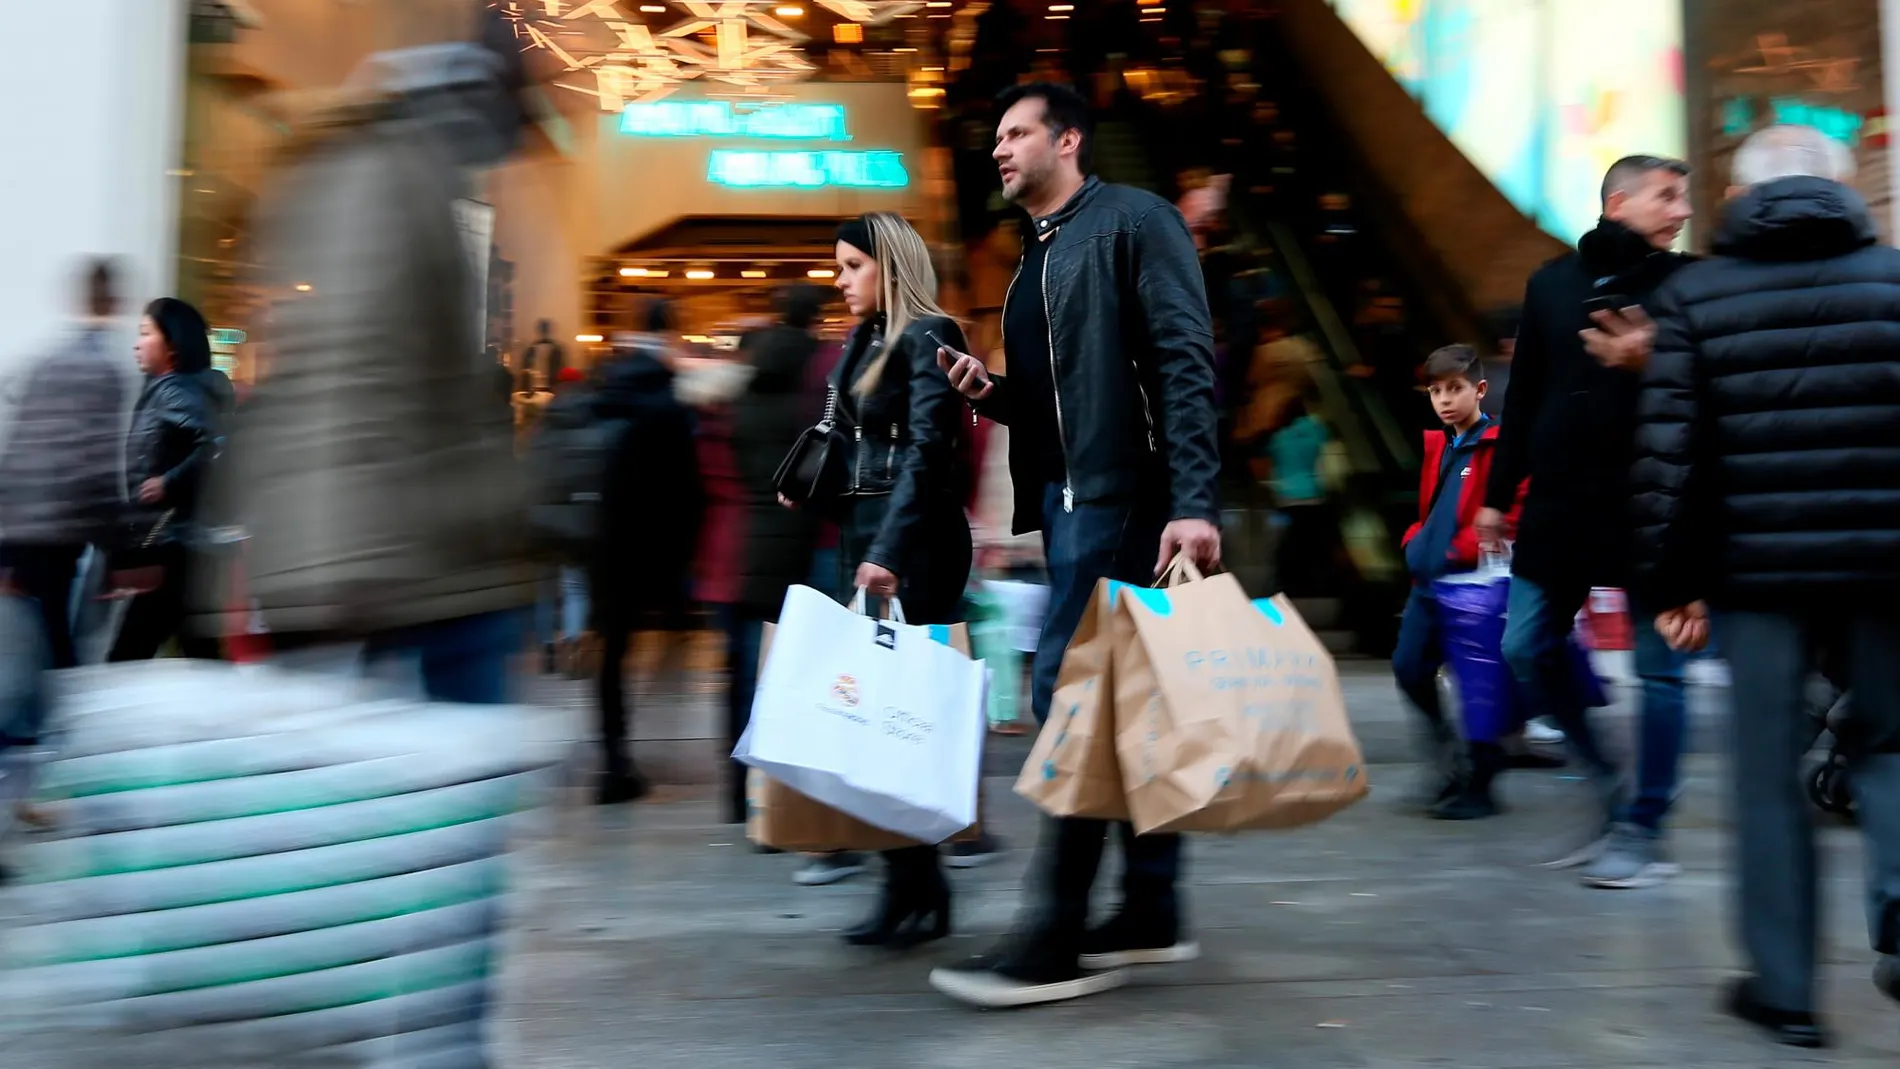 Los ciudadanos concentran sus compras en los periodos de rebajas o en las fechas navideñas